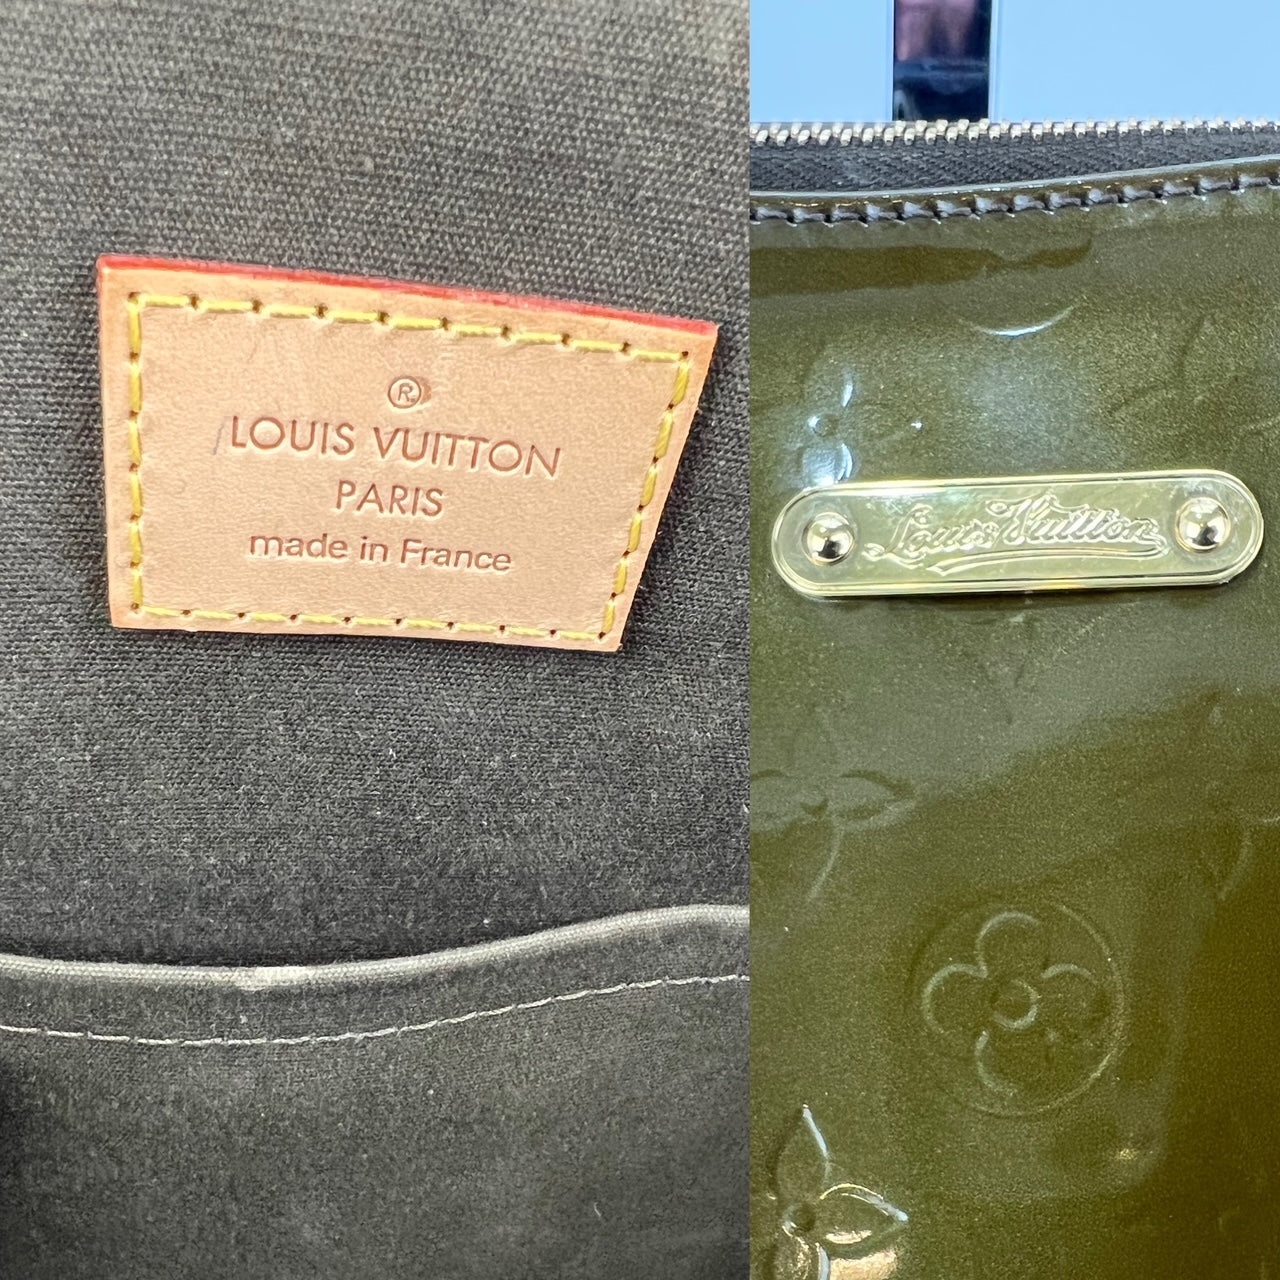 Louis Vuitton Monogram Vernis Bellevue GM Dark Green.